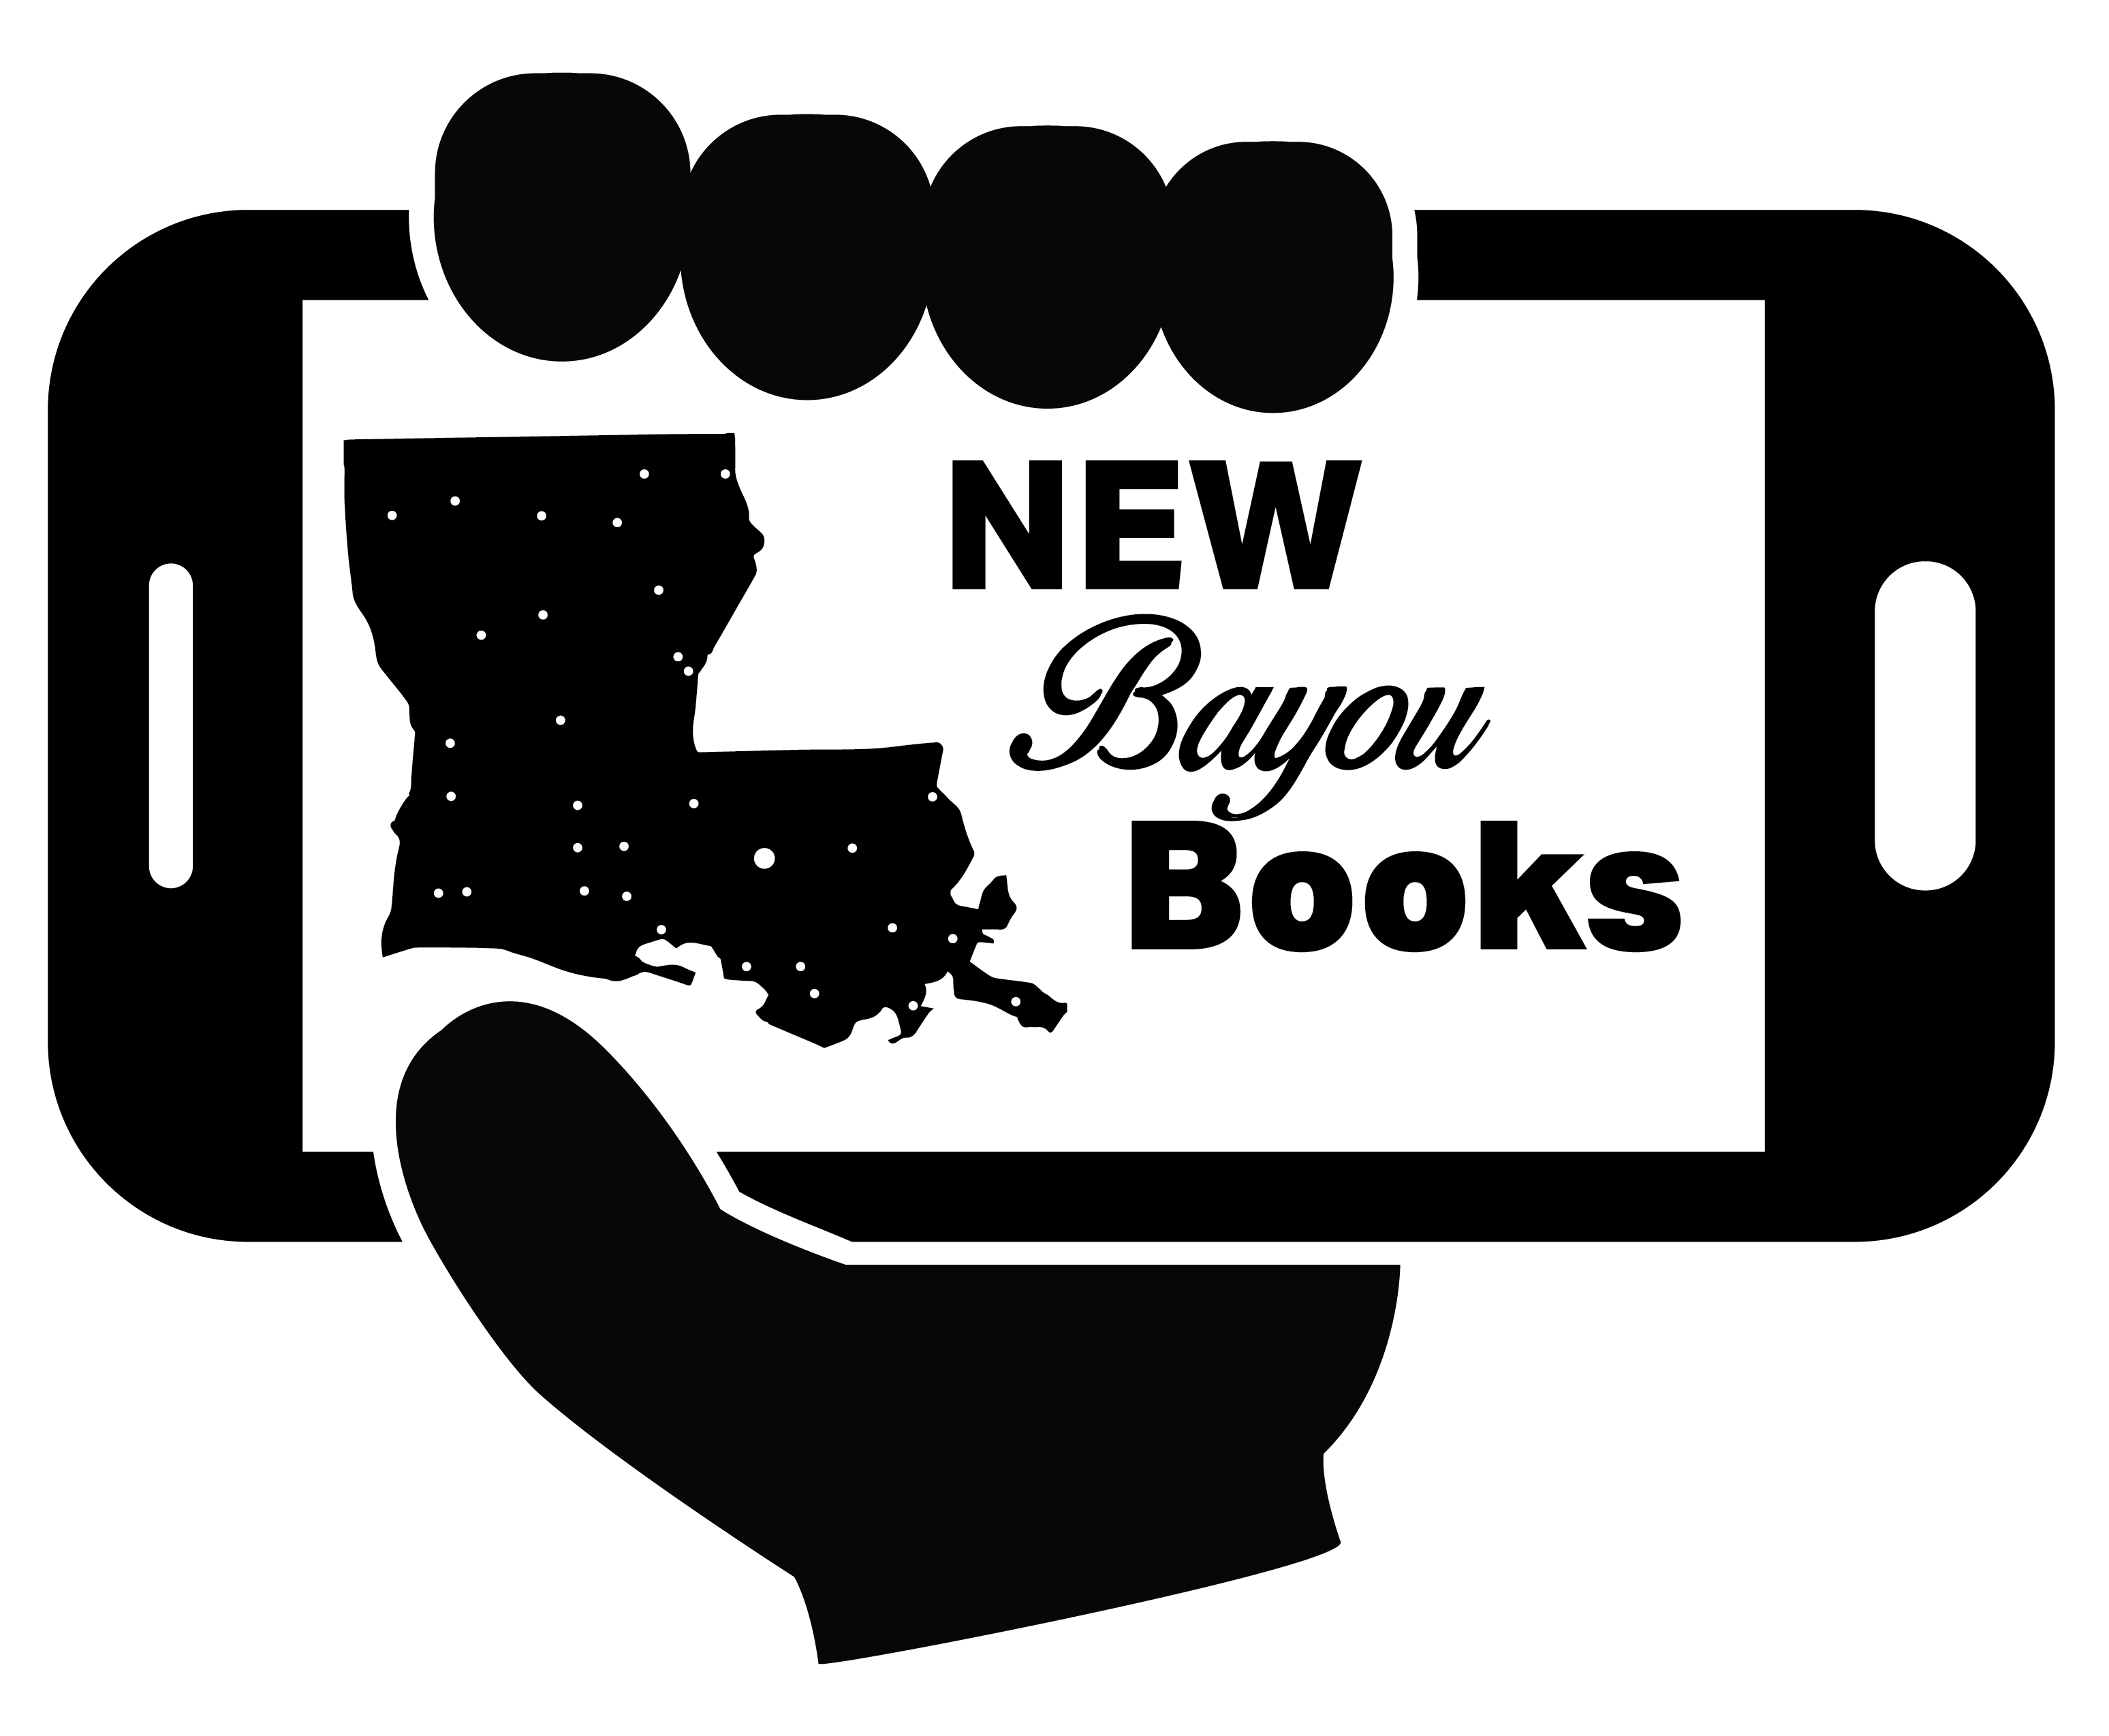 New Bayou Books